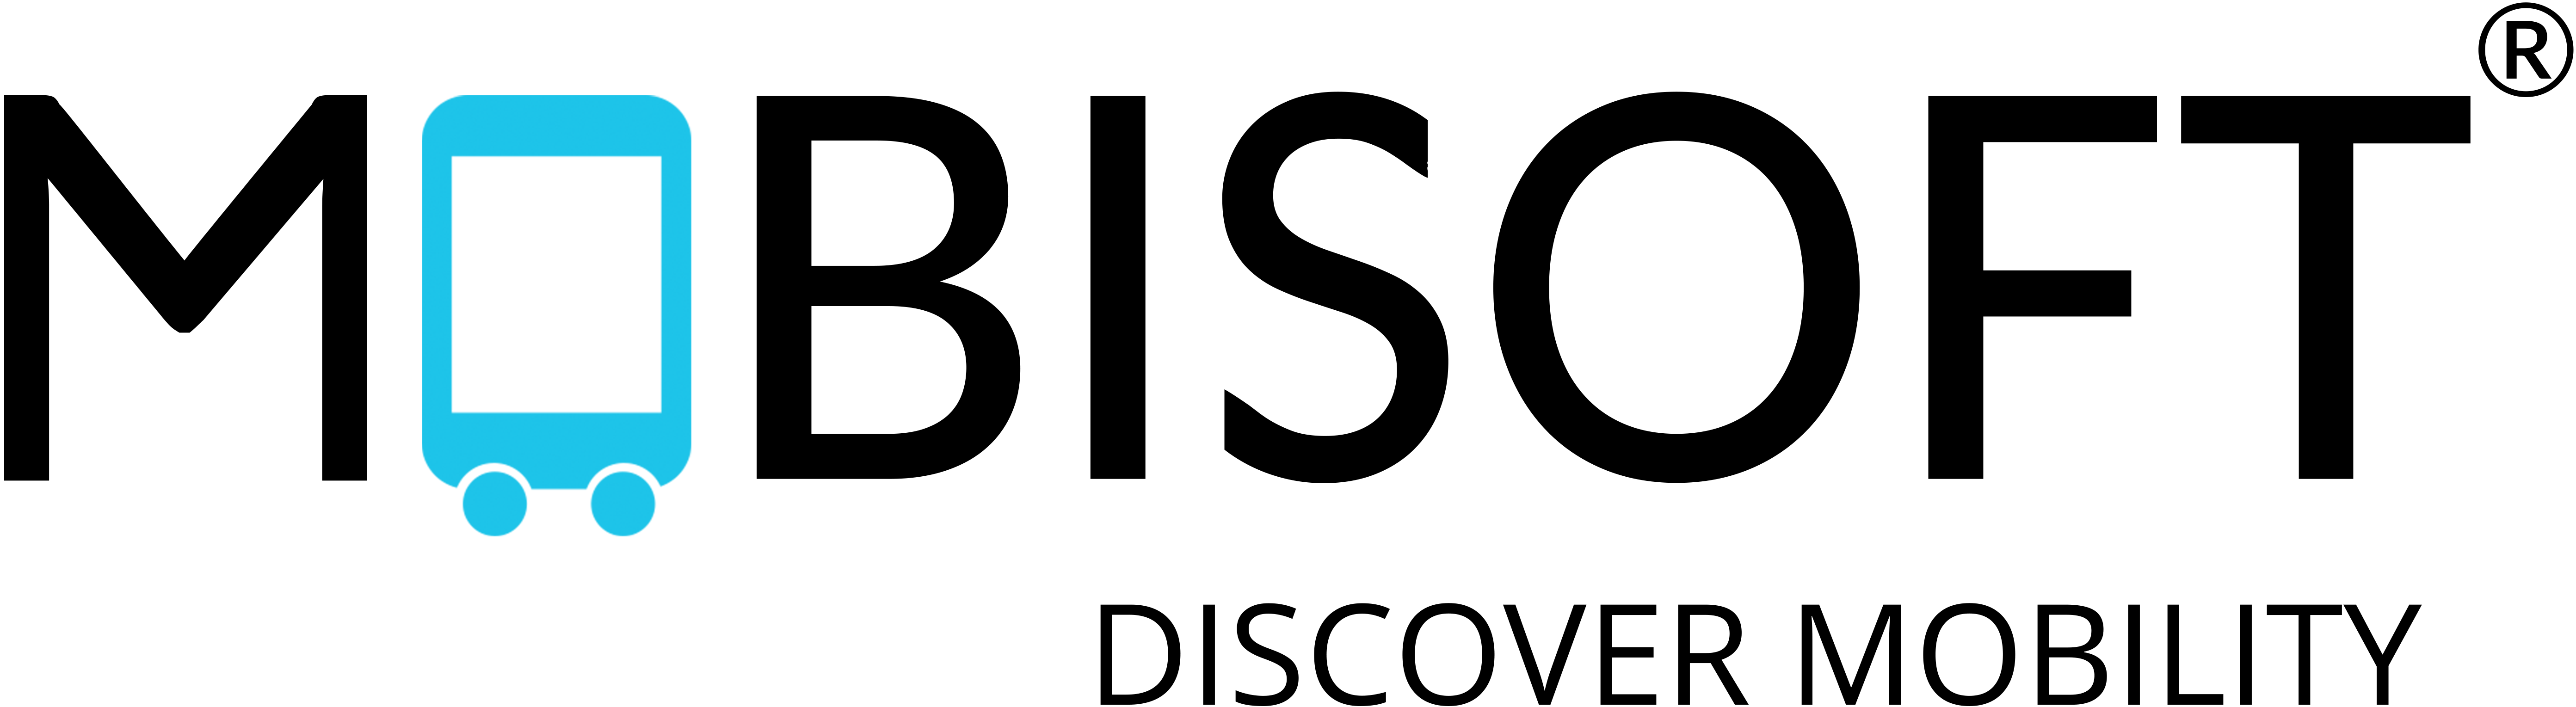 Mobisoft logo